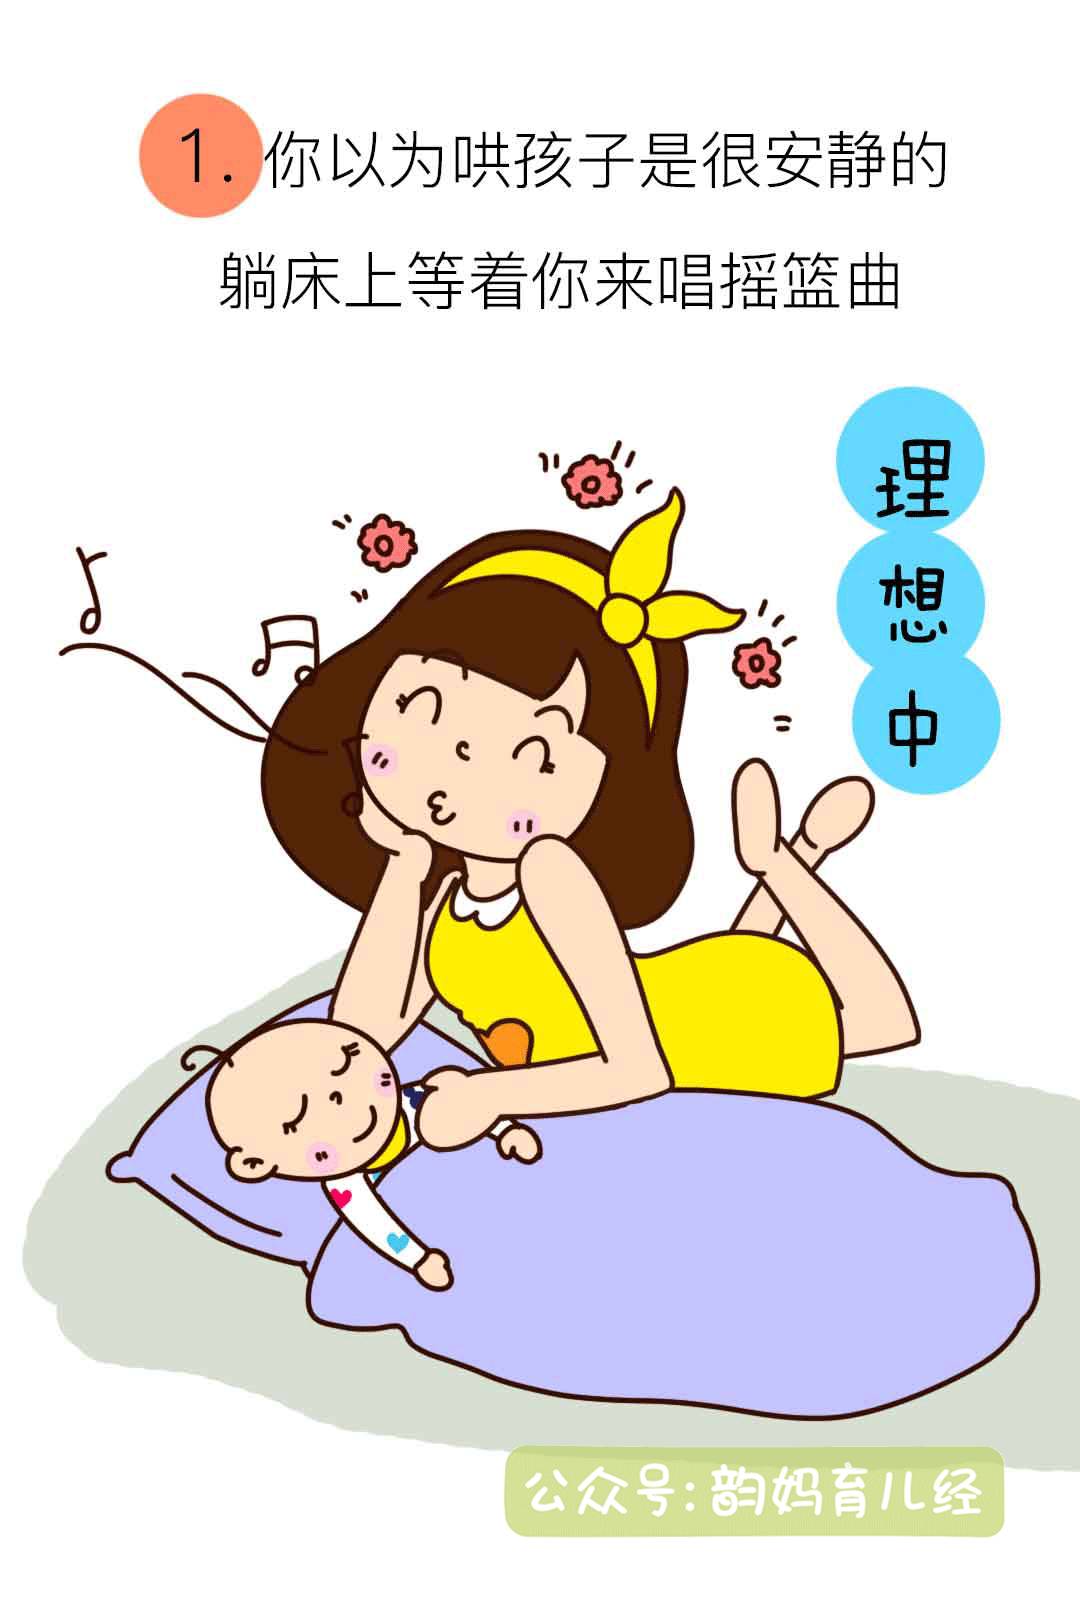 韵妈漫画:养娃很现实,当妈请慎重!